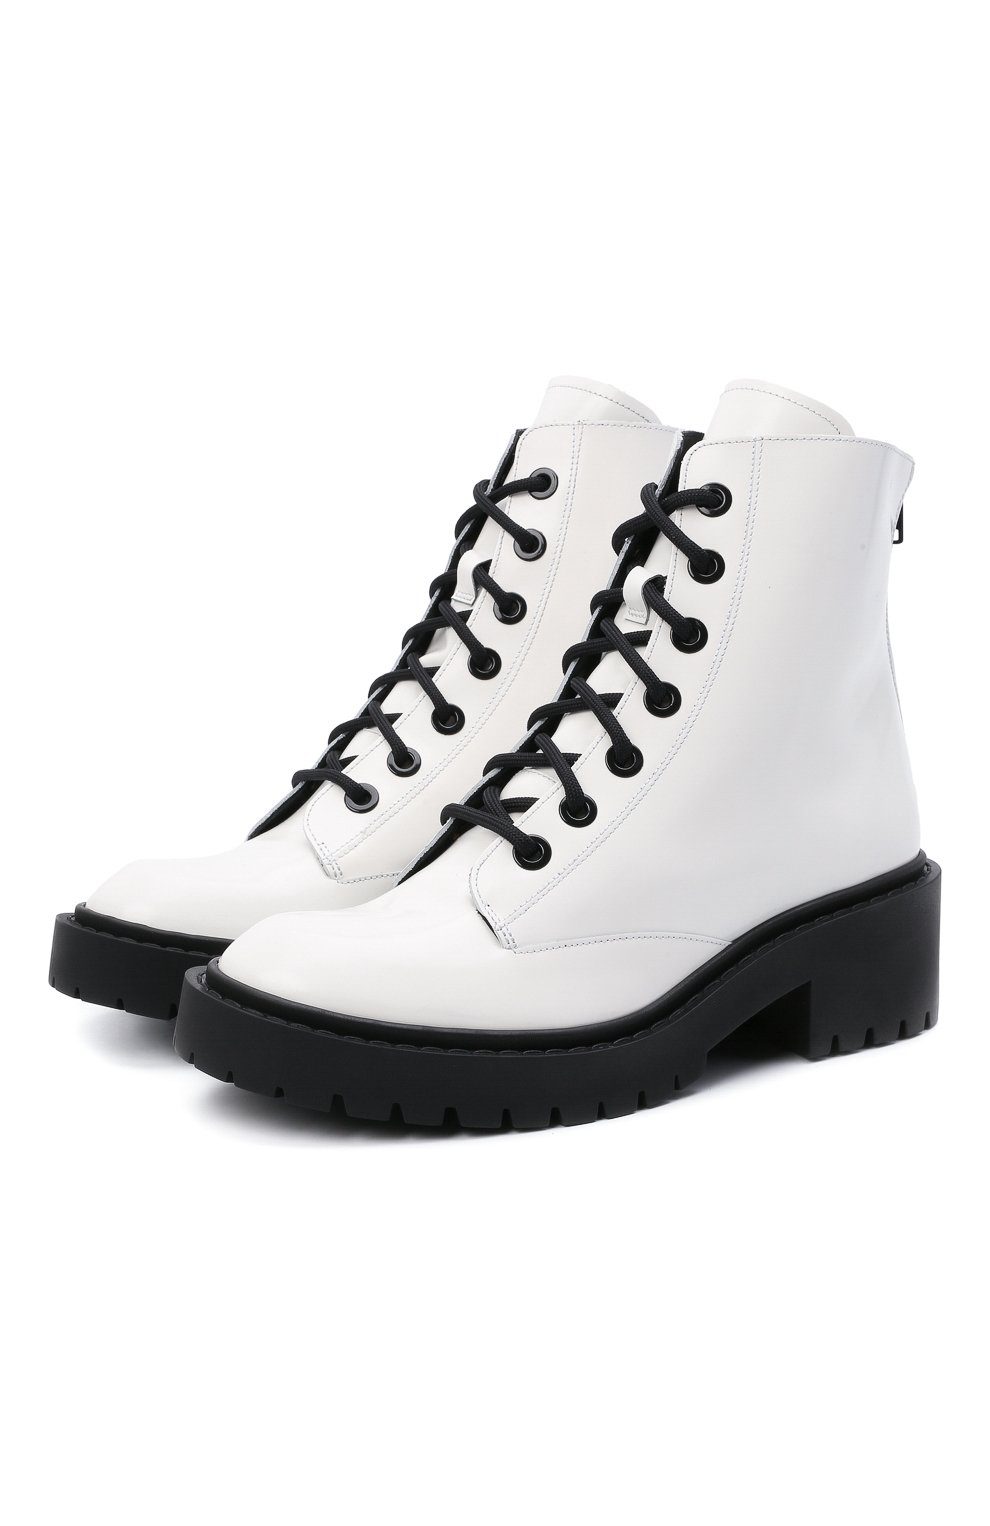 Кожаные ботинки City Kenzo FB52BT340L67, цвет белый, размер 38